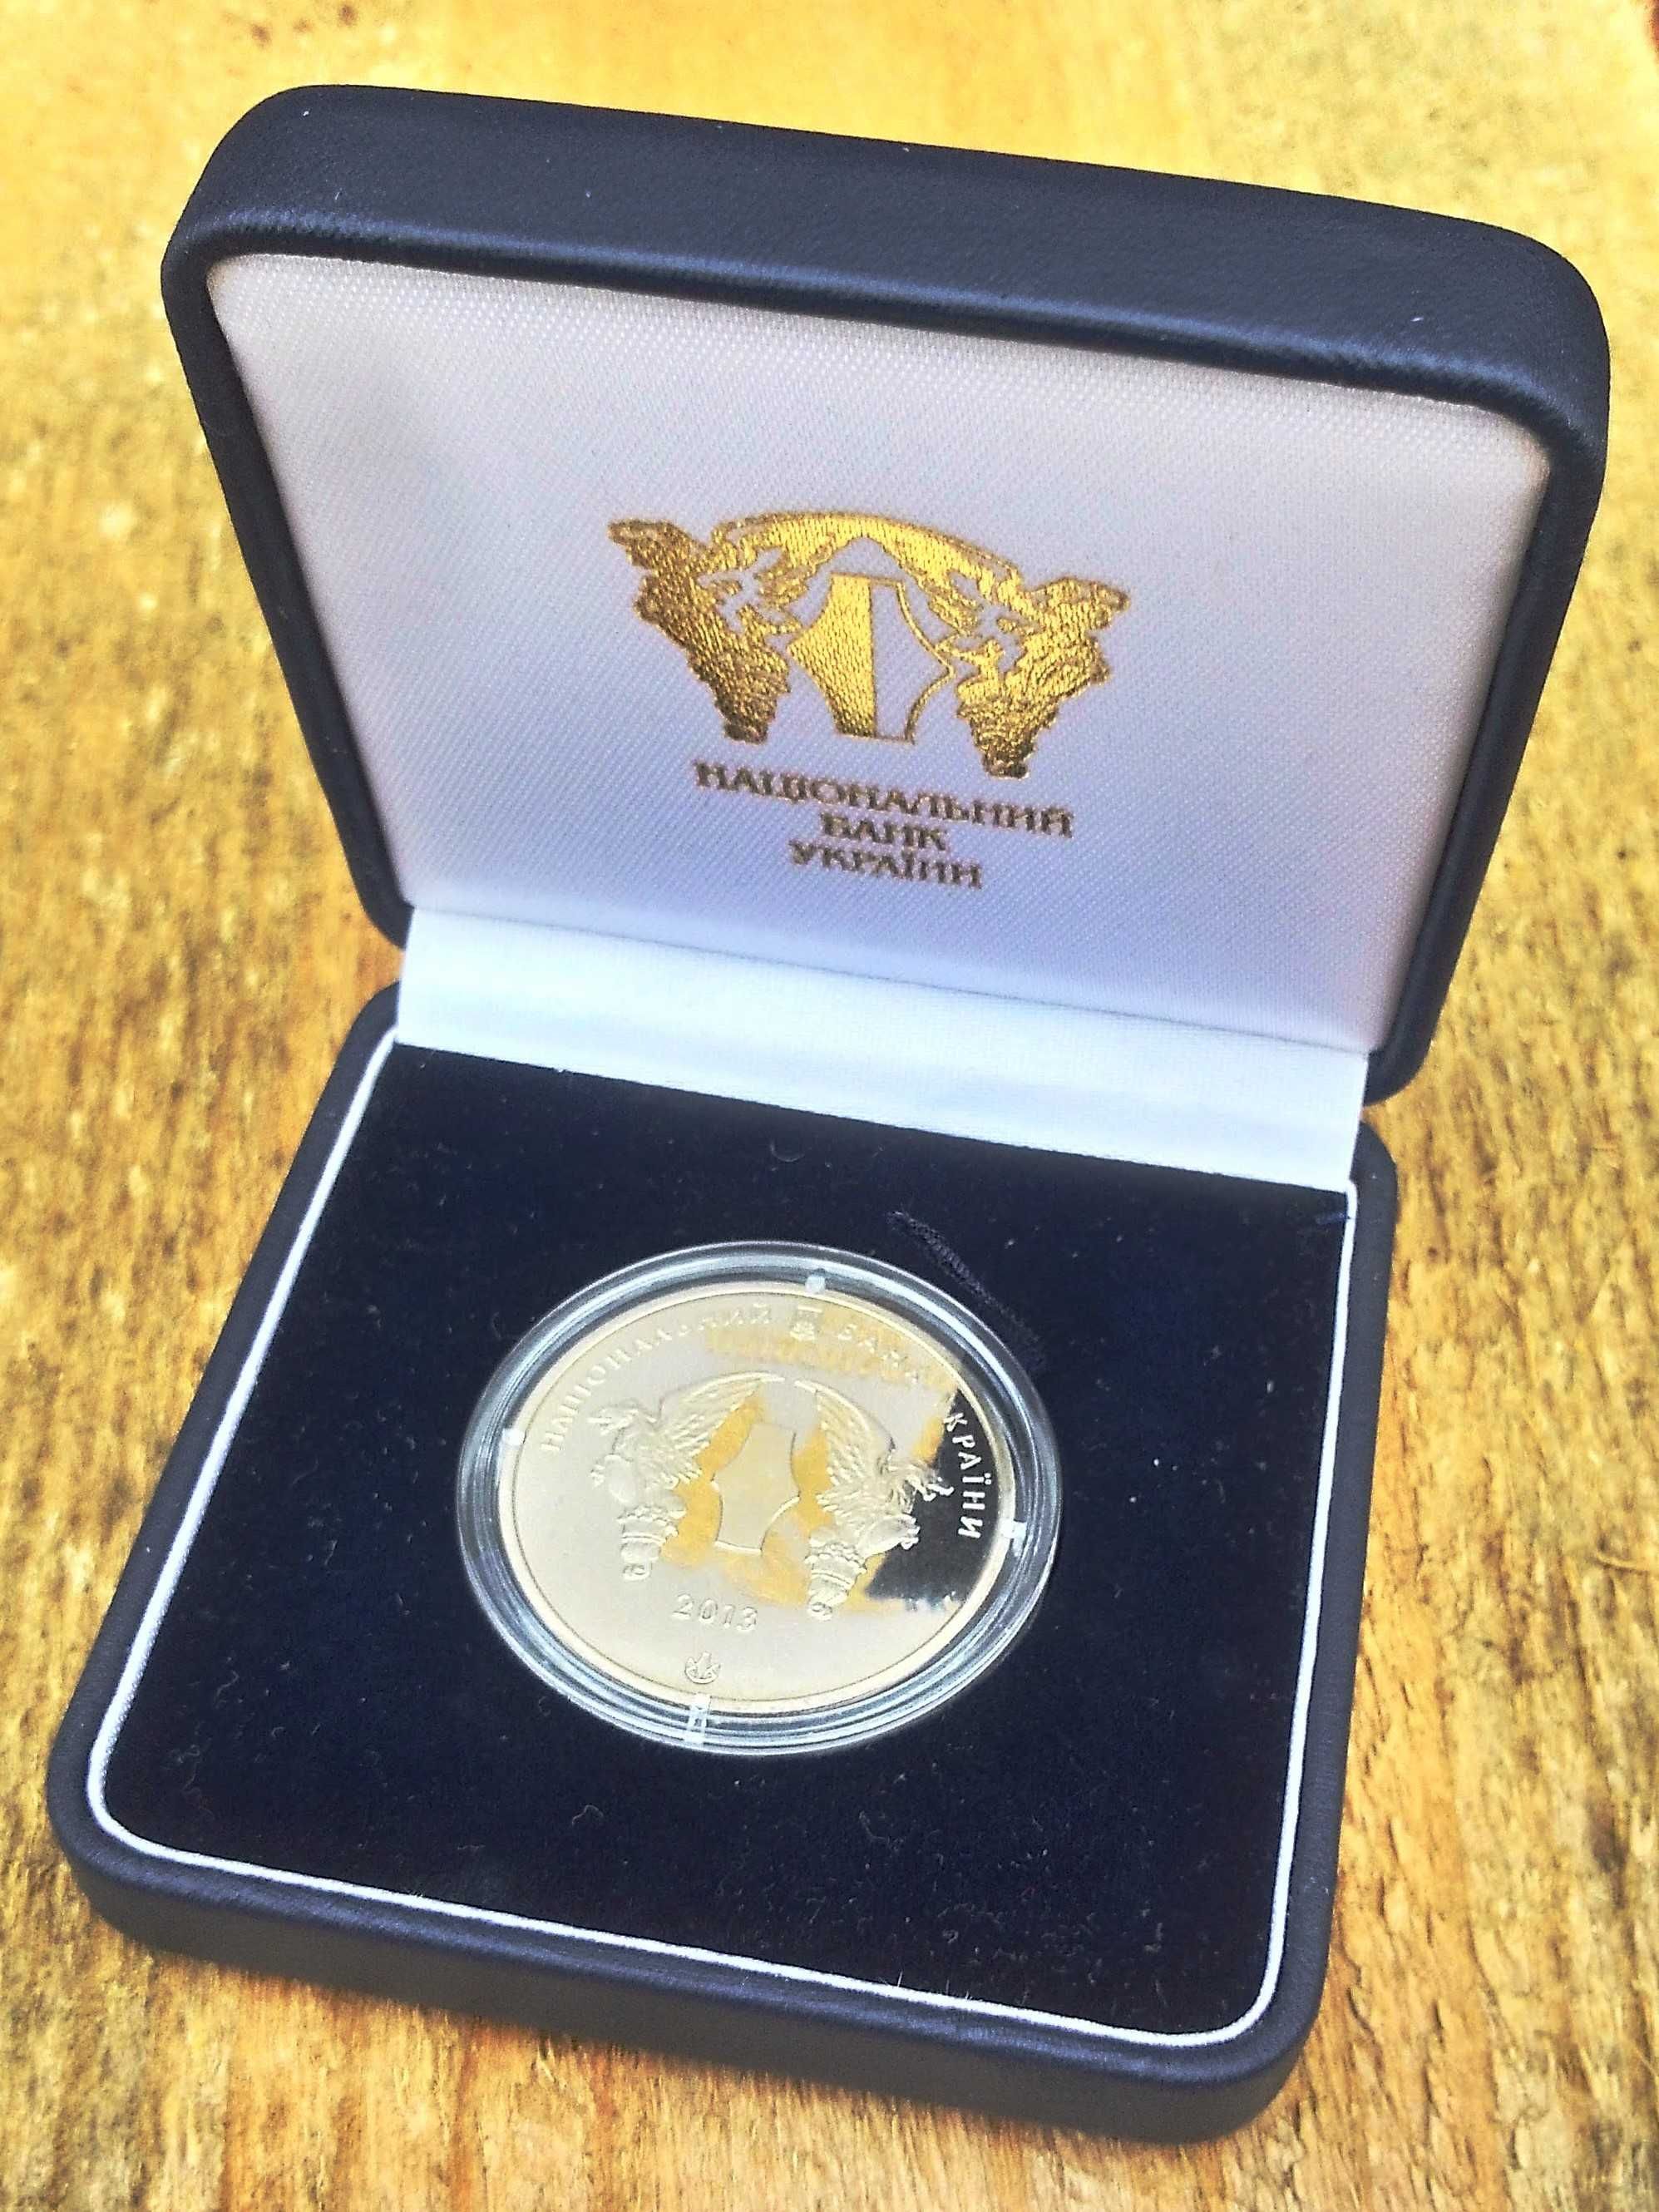 Оригінальна медаль НБУ 2013 року Система електронних платежів 20 років